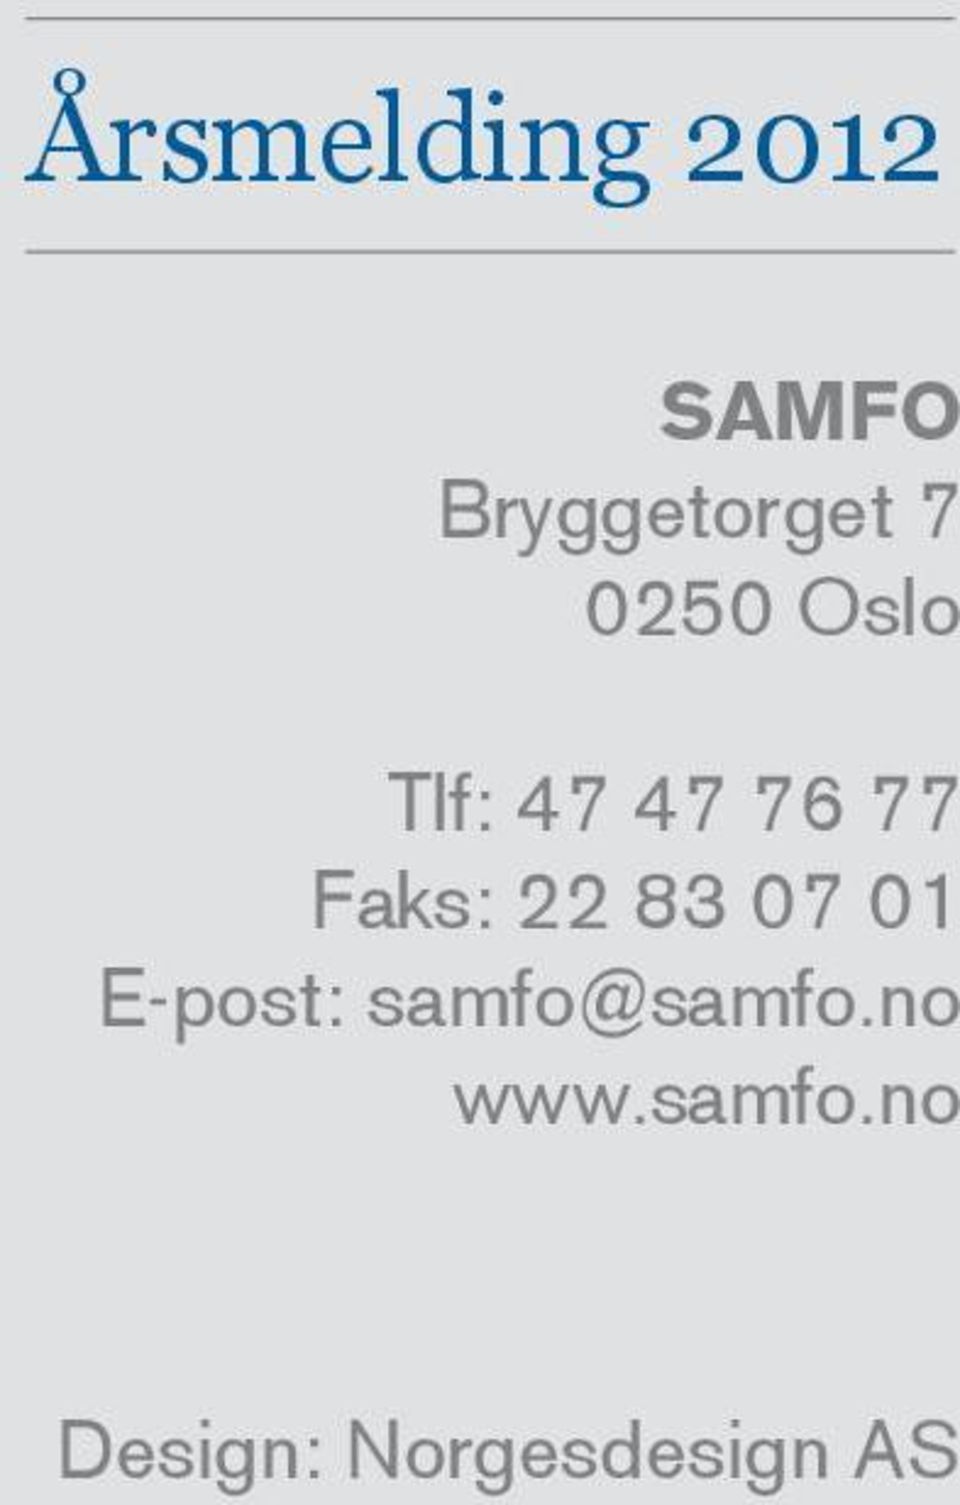 E-post: samfo@